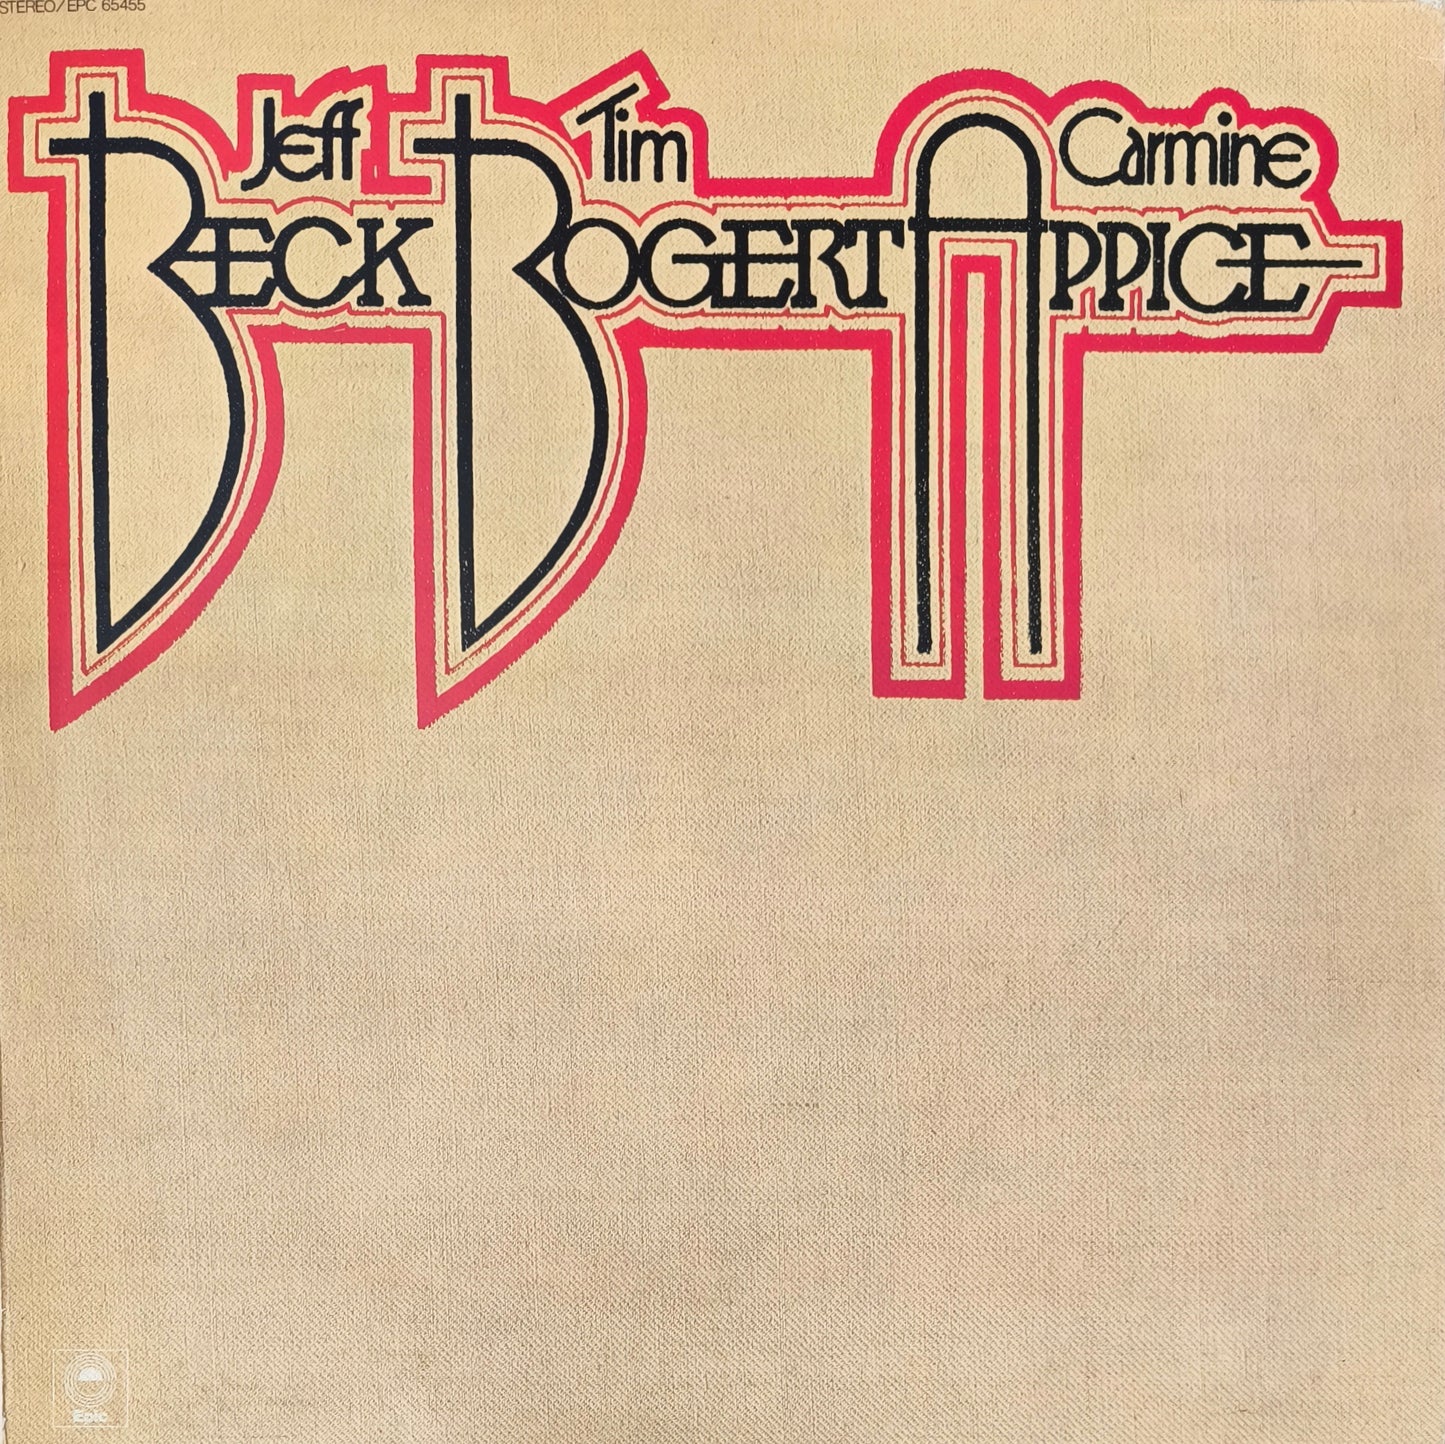 BECK, BOGERT & APPICE - Beck, Bogert & Appice